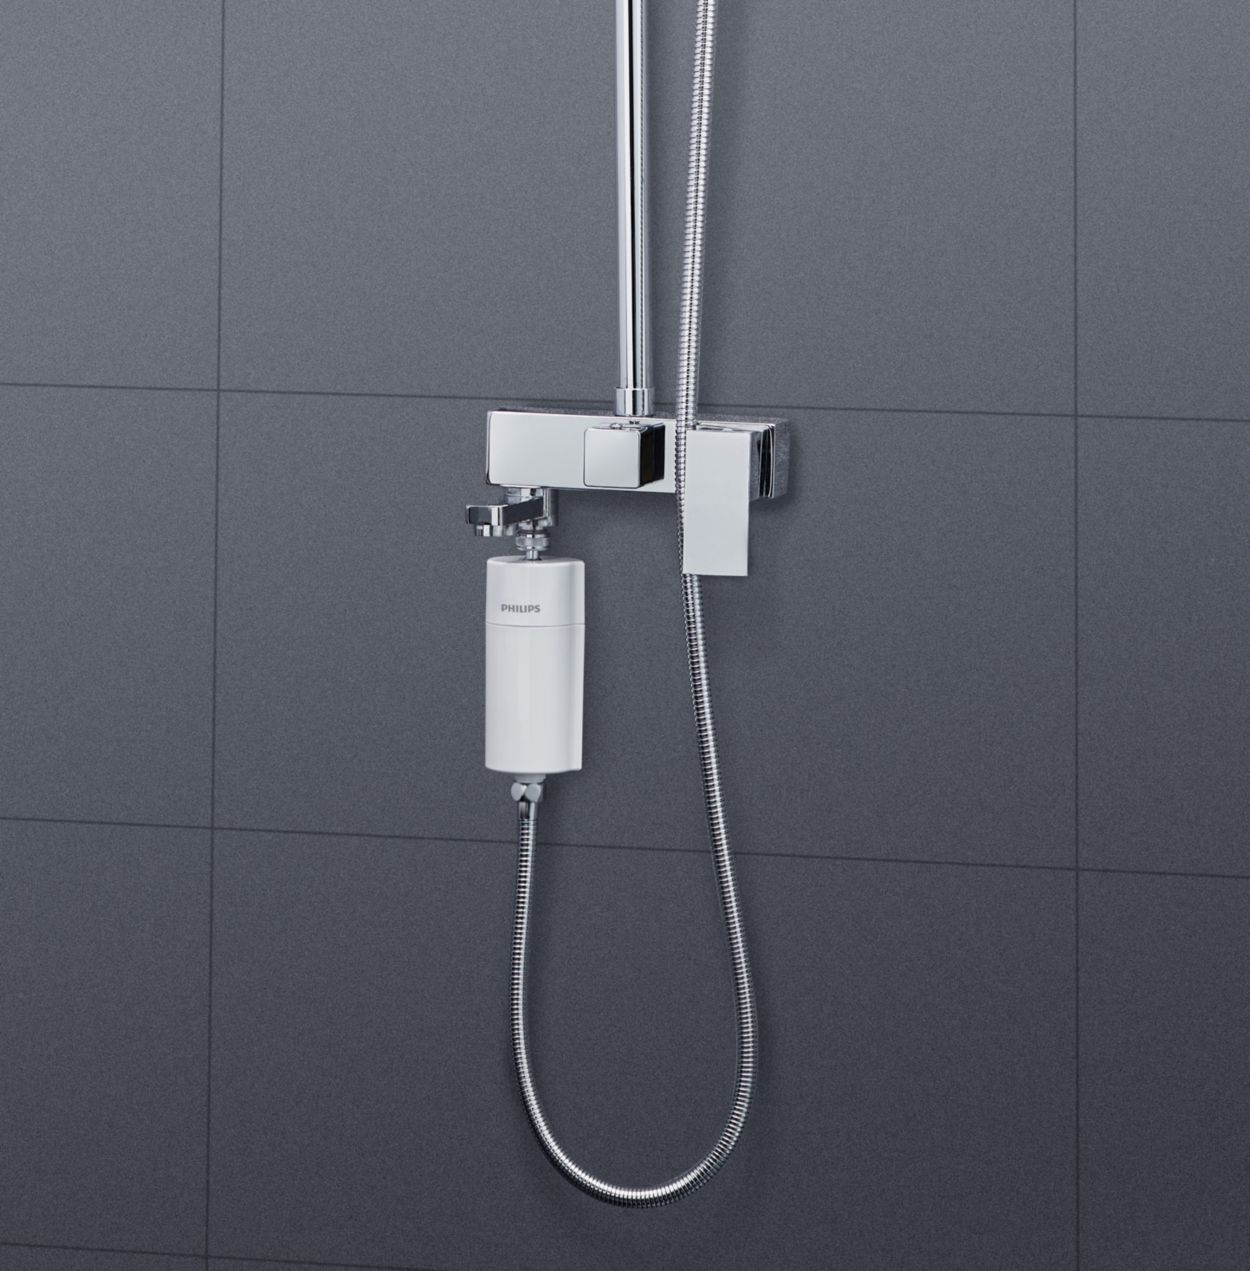 Système de filtre de douche Philips Water Filtration en ligne avec